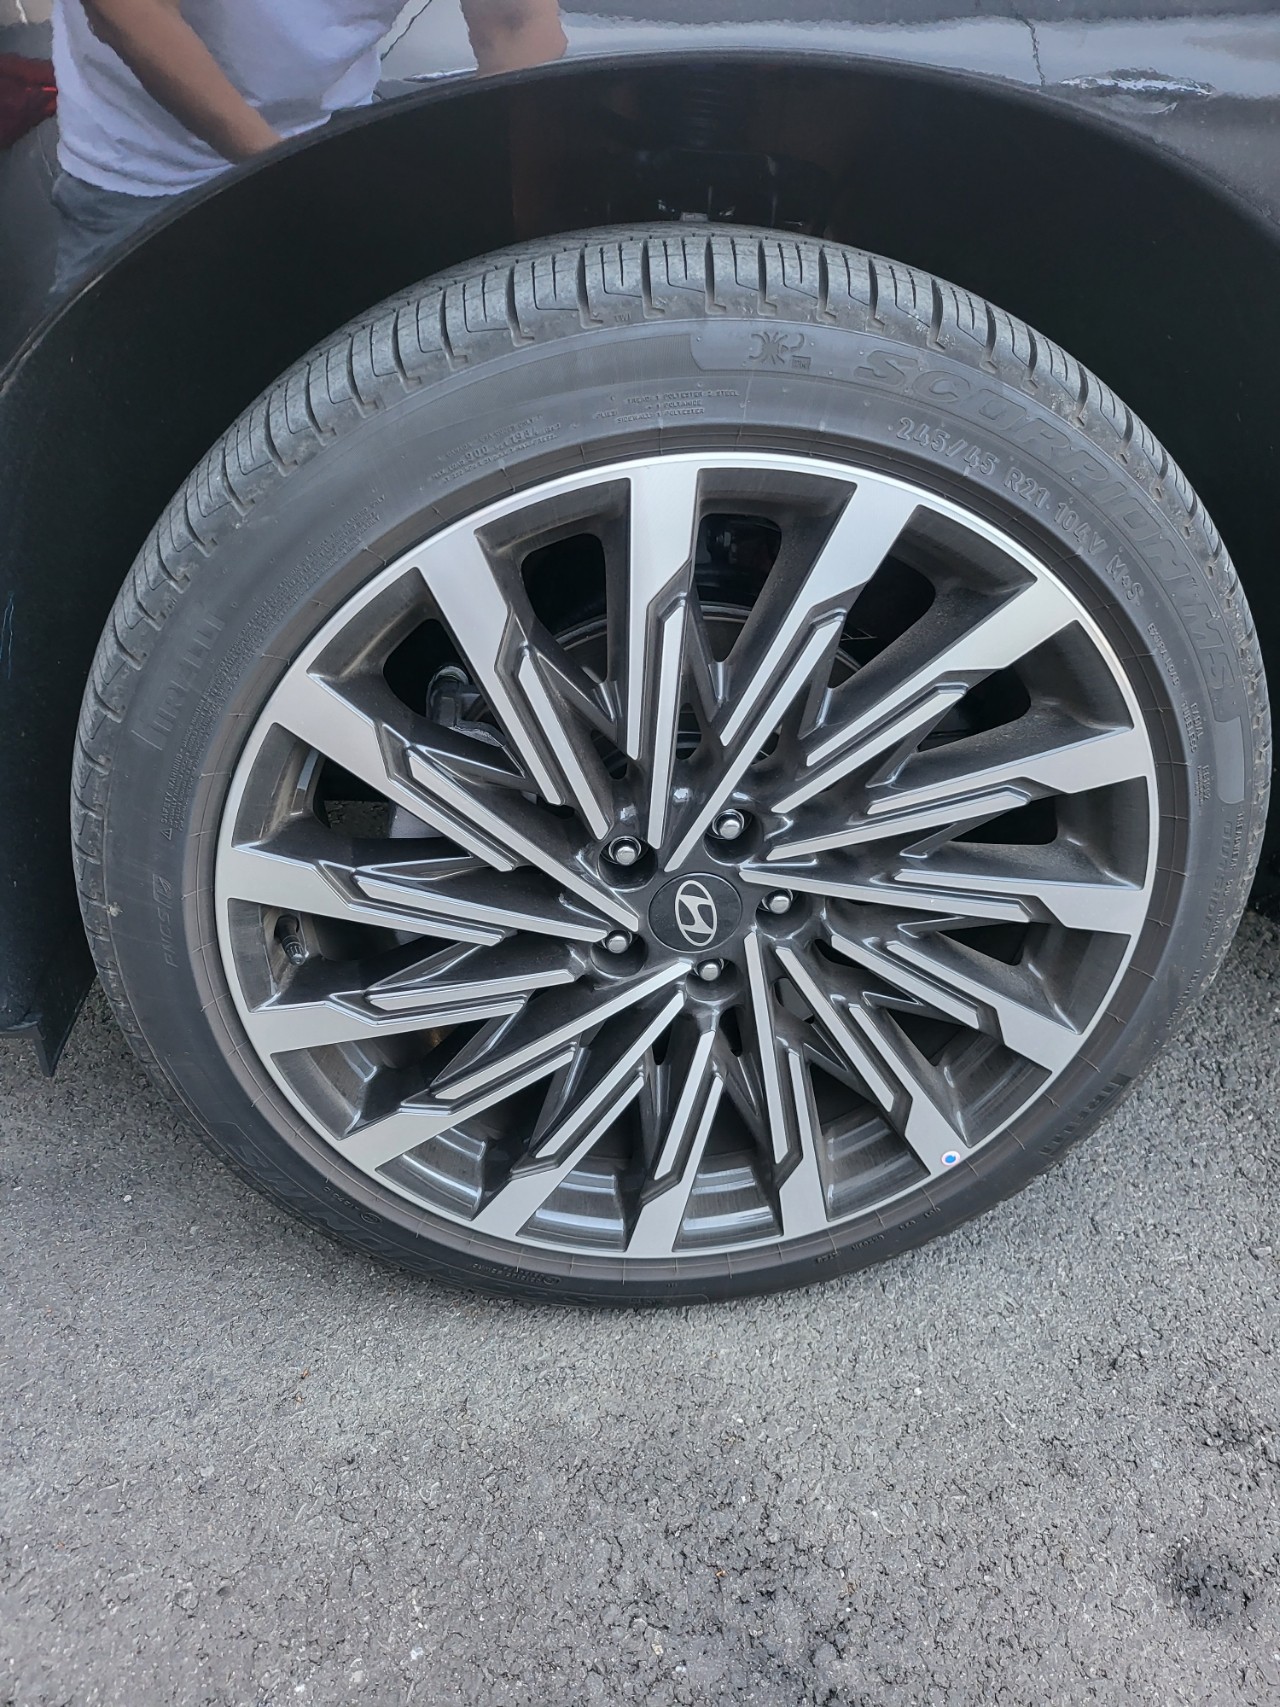 타이어, 교통, 바퀴, 자동차 부품이(가) 표시된 사진

자동 생성된 설명